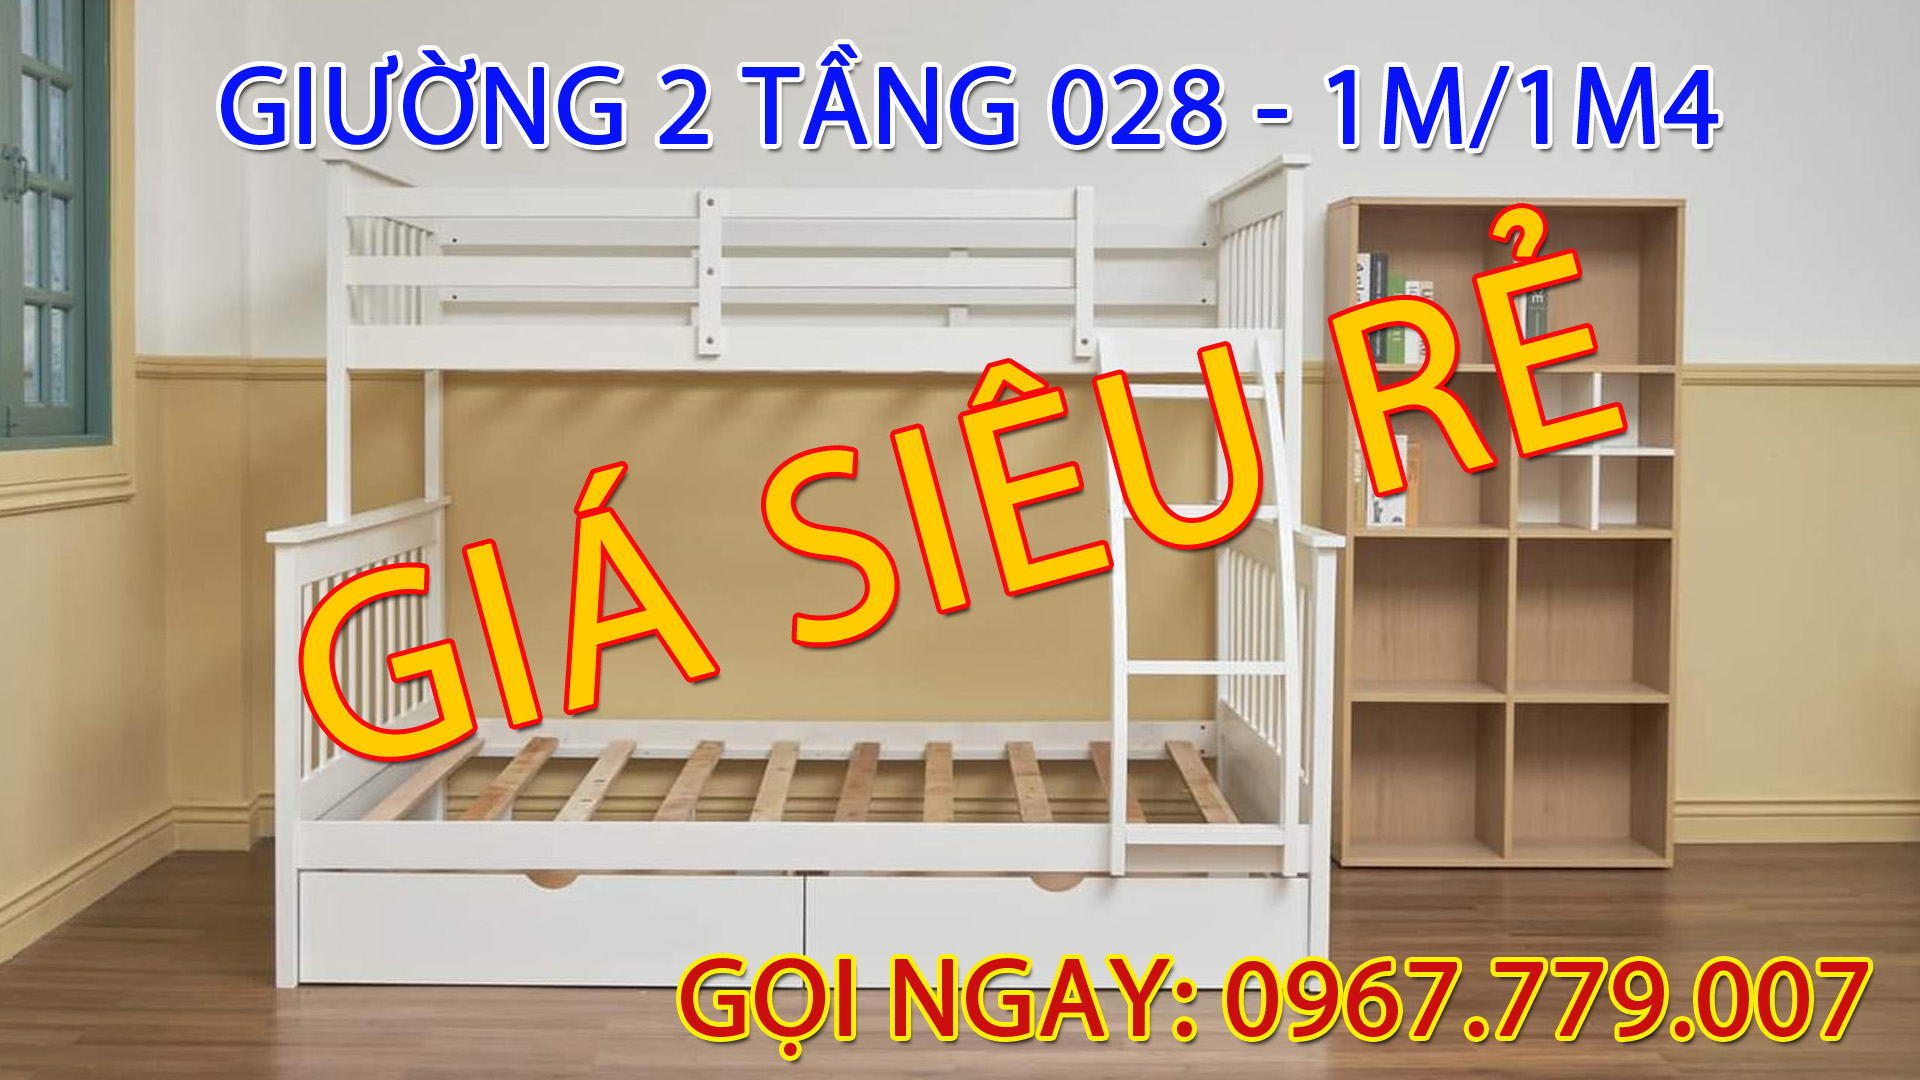 Bạn nên chọn mua giường 2 tầng 1m-1m4 MS 028 vì giá siêu rẻ đẹp và đa năng nhất TPHCM